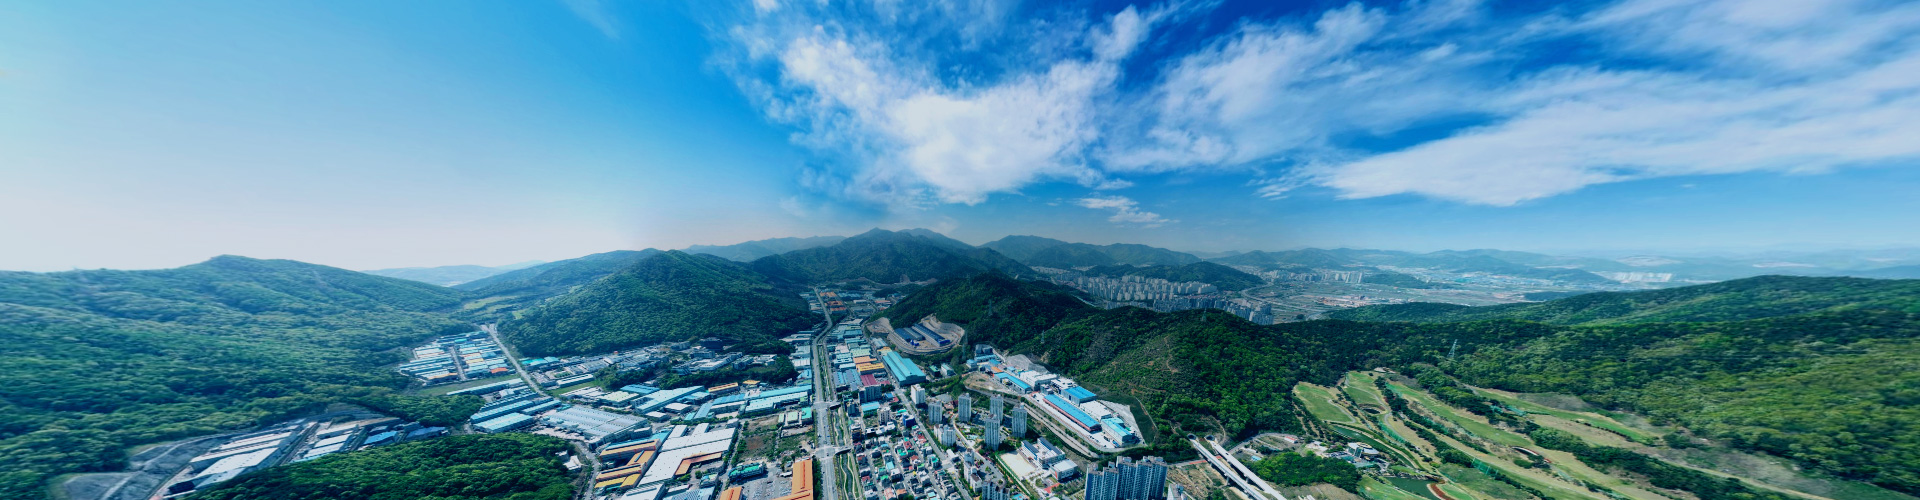 機会と成功の場所、釜山鎮海経済自由区域